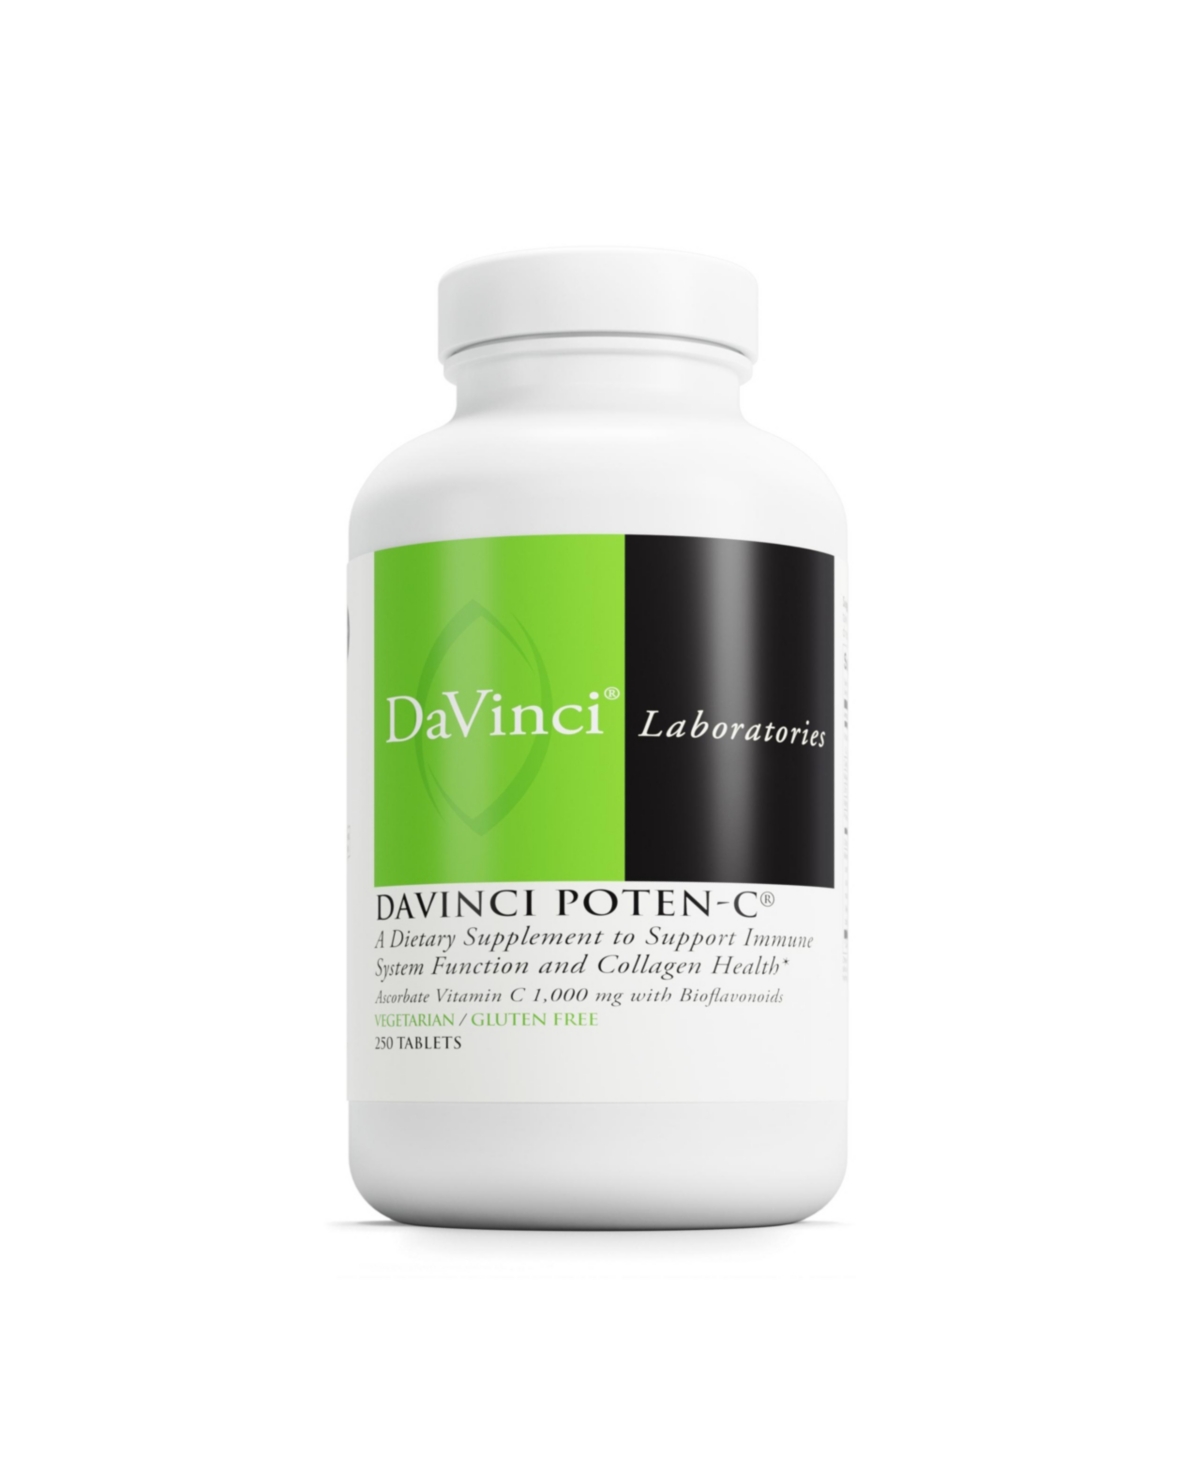 DaVinci Labs Poten-c - Support Immune System Function & Collagen Health - Vitamin C, Calcium, Magnesium, Zinc, Potassium, Manganese & Bioflavonoids -